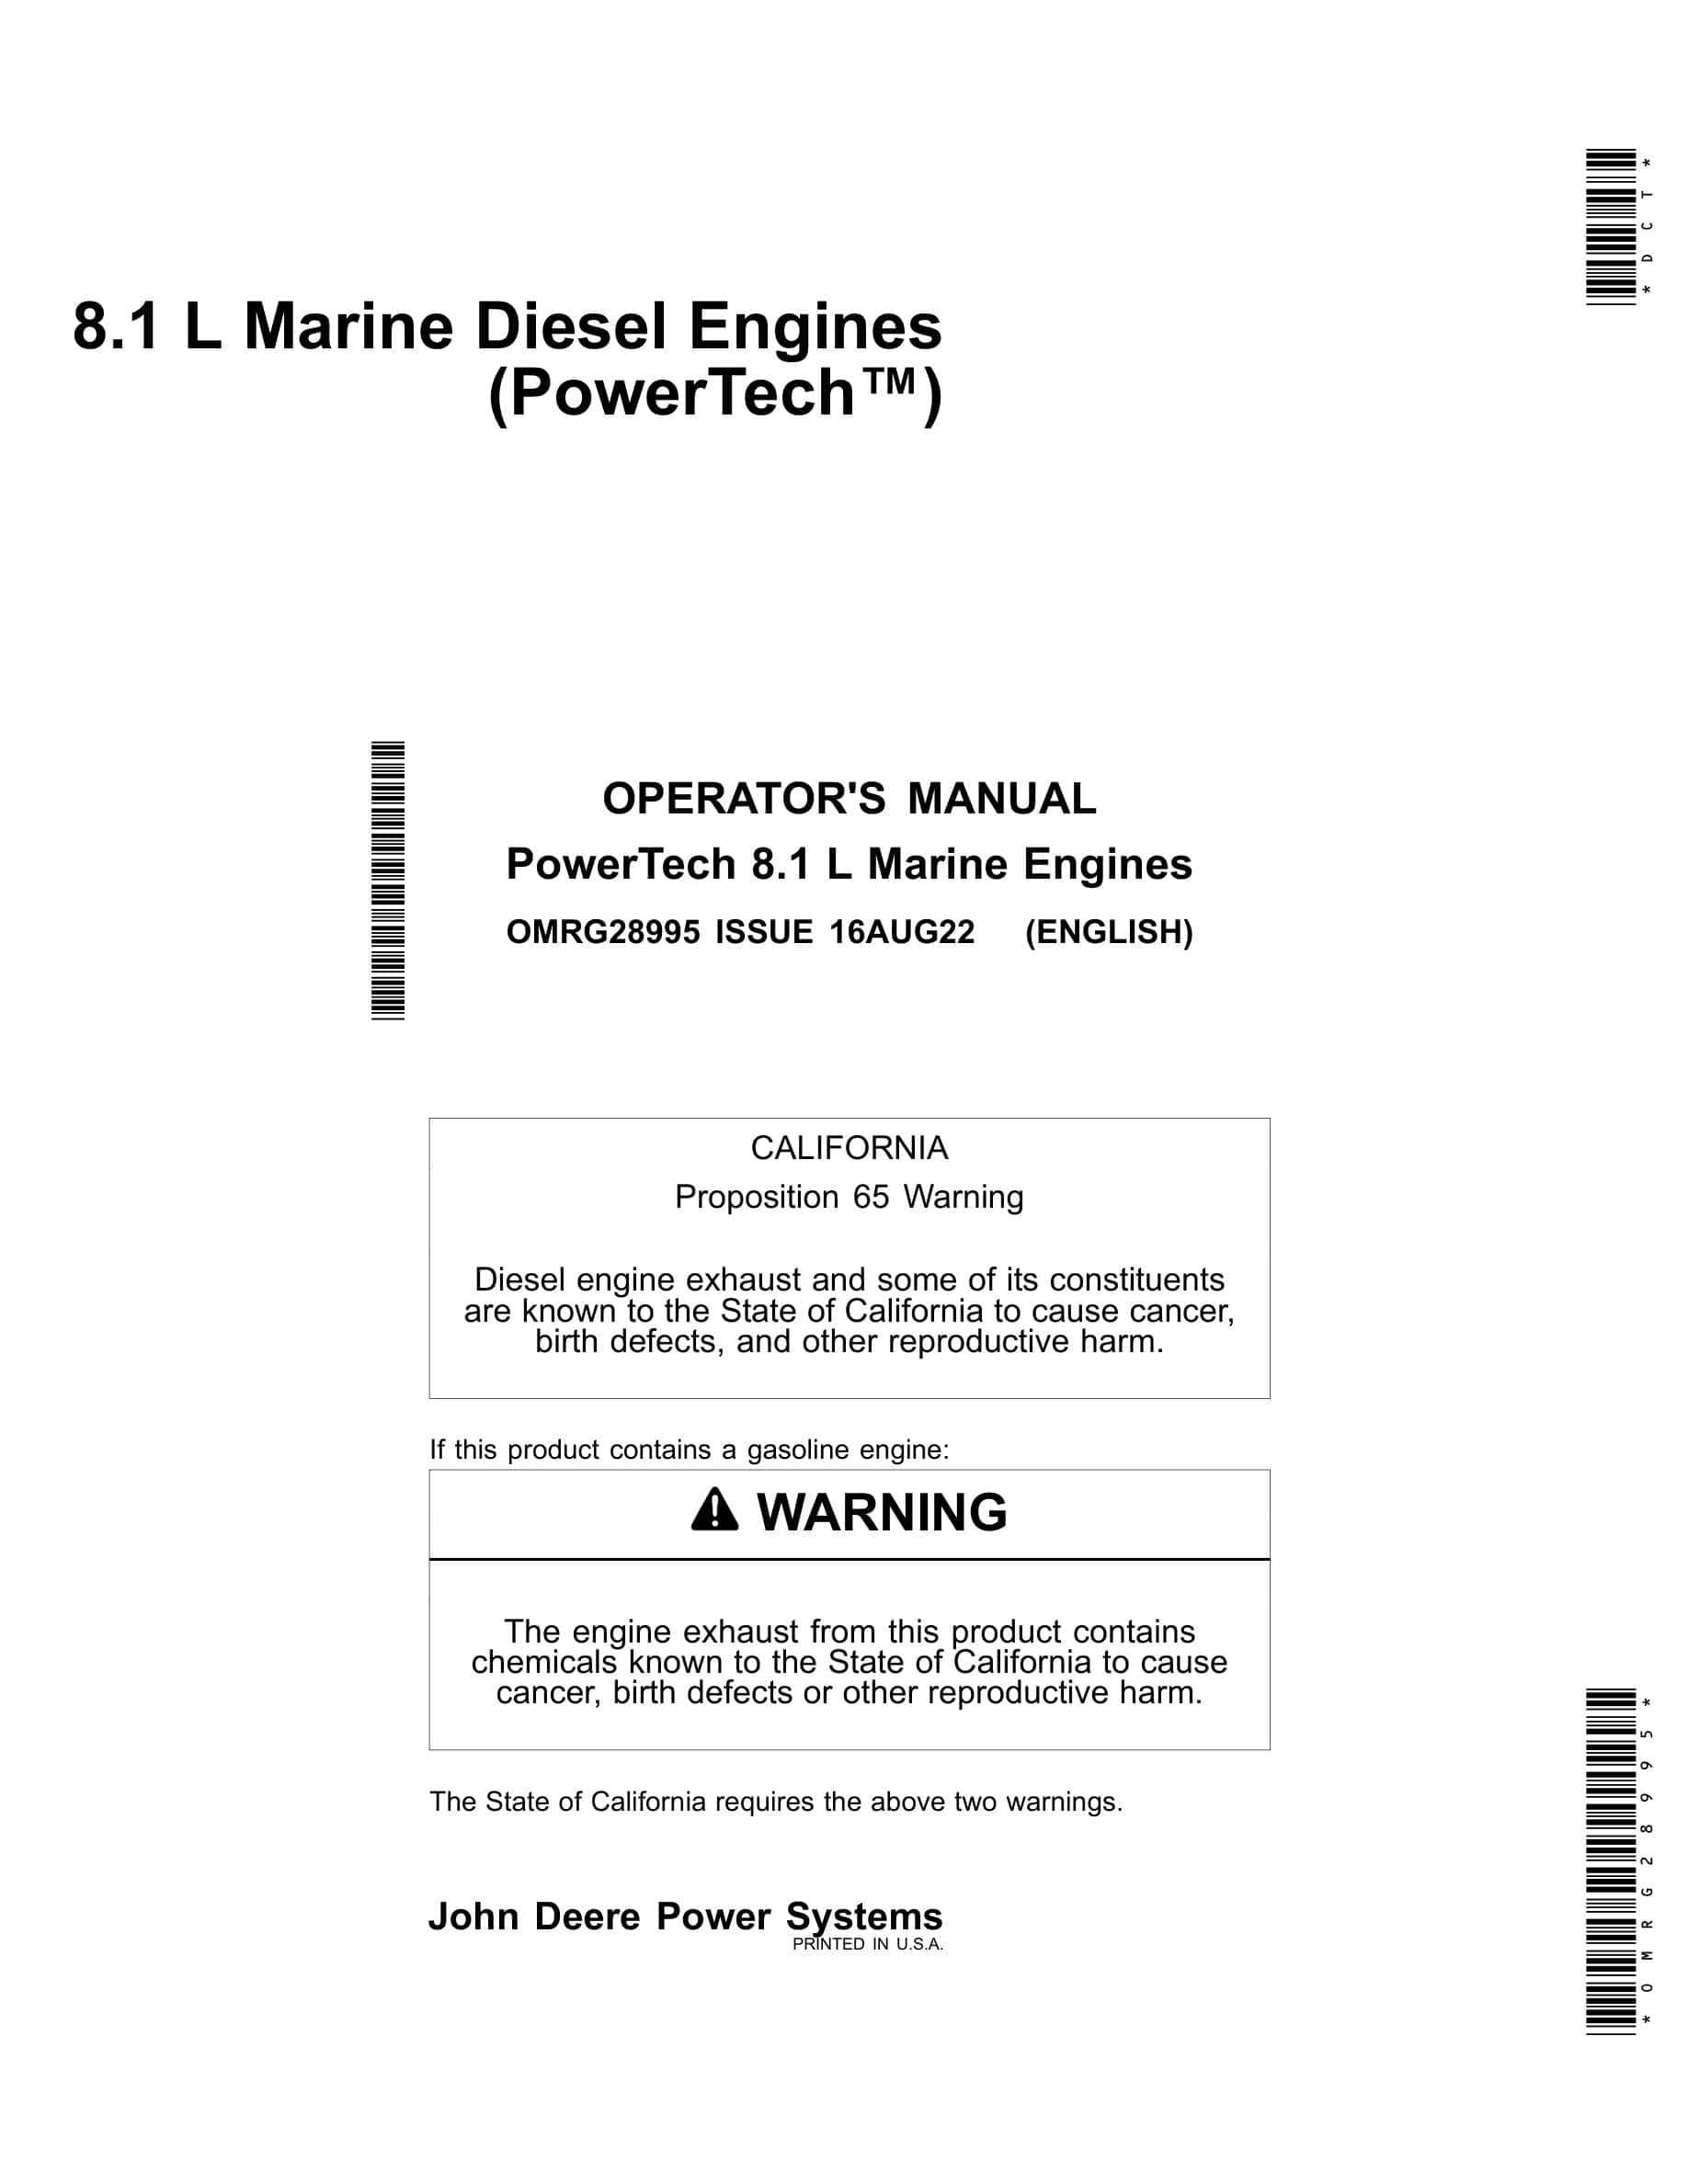 John Deere PowerTech 8.1 L Marine Diesel Engines Operator Manual OMRG28995-1